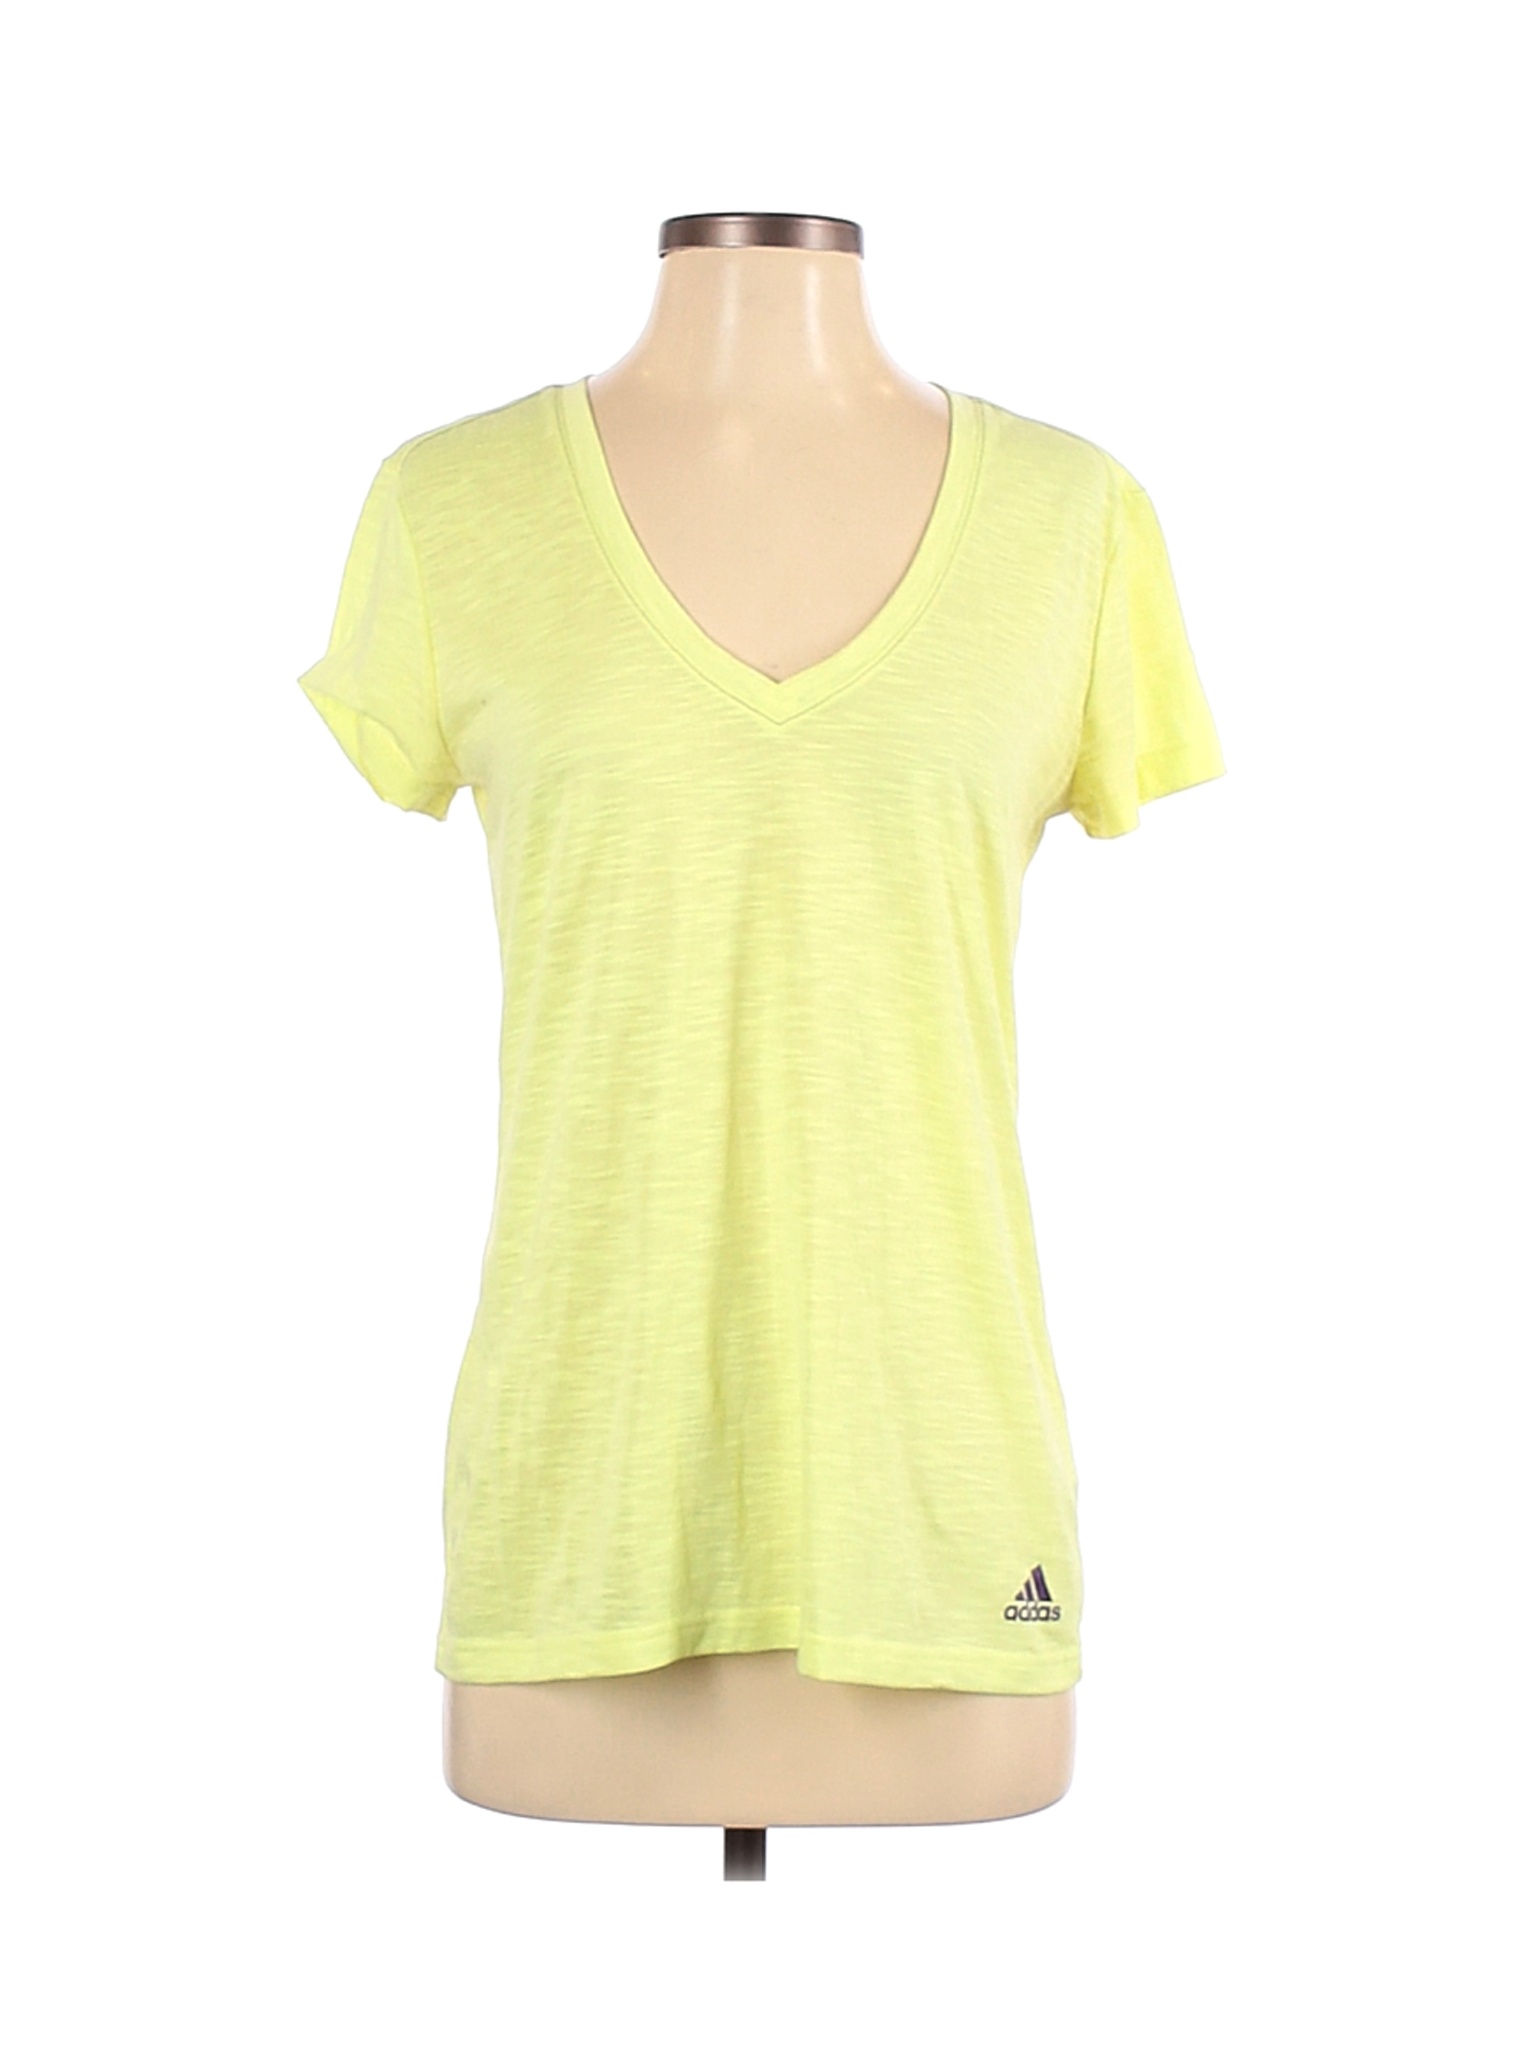 Adidas Women Yellow Active T-Shirt S | eBay